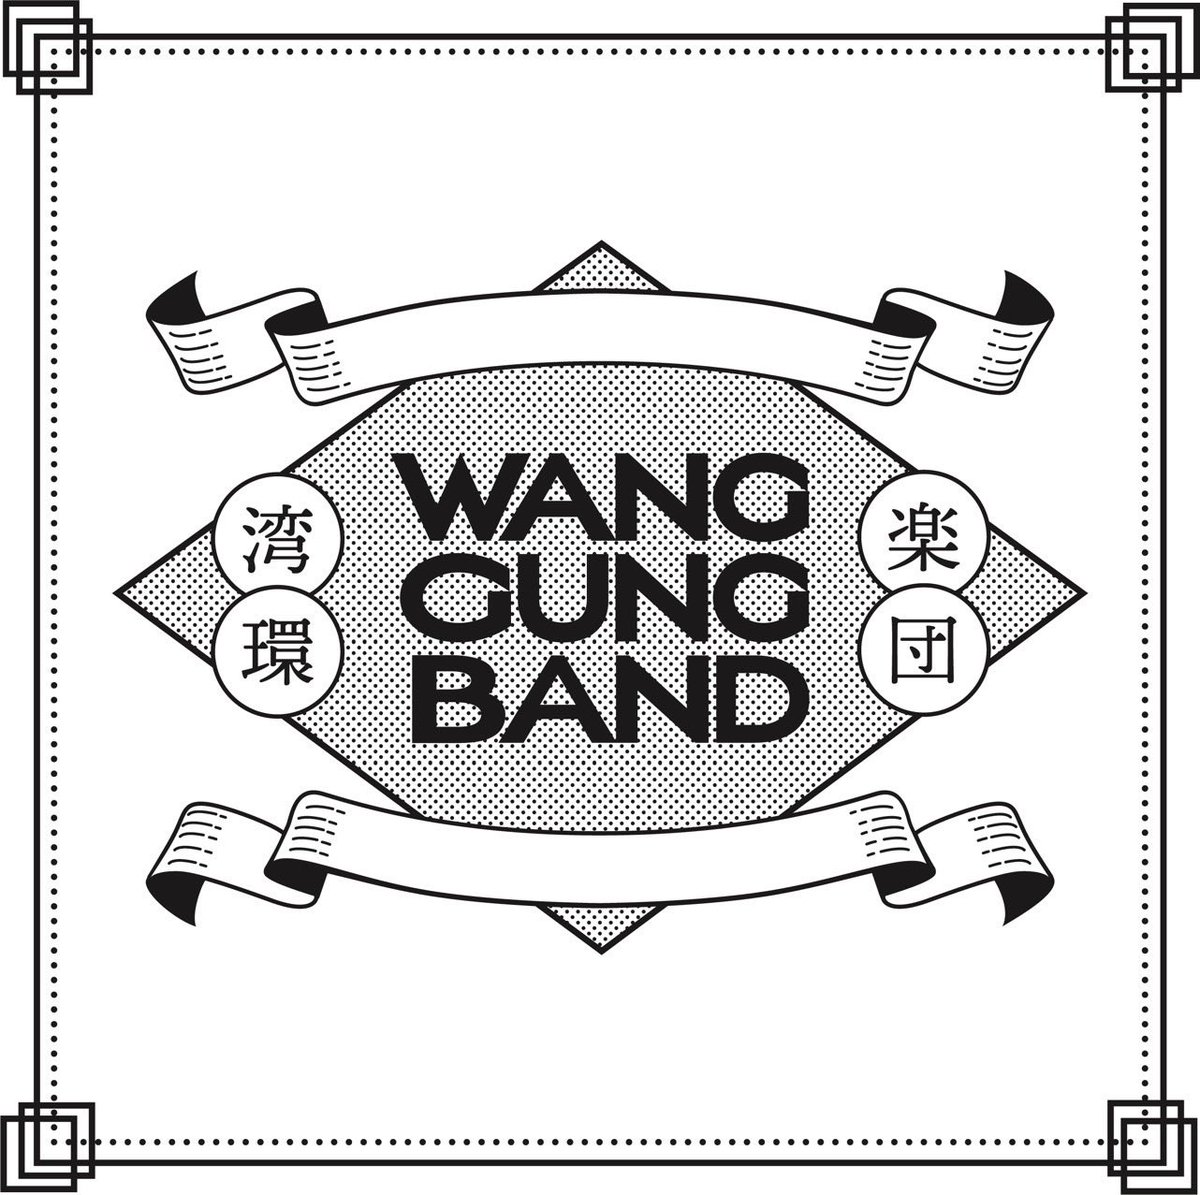 #newlogo 
#wanggungband 

✏︎ designed by @_ibushiginco